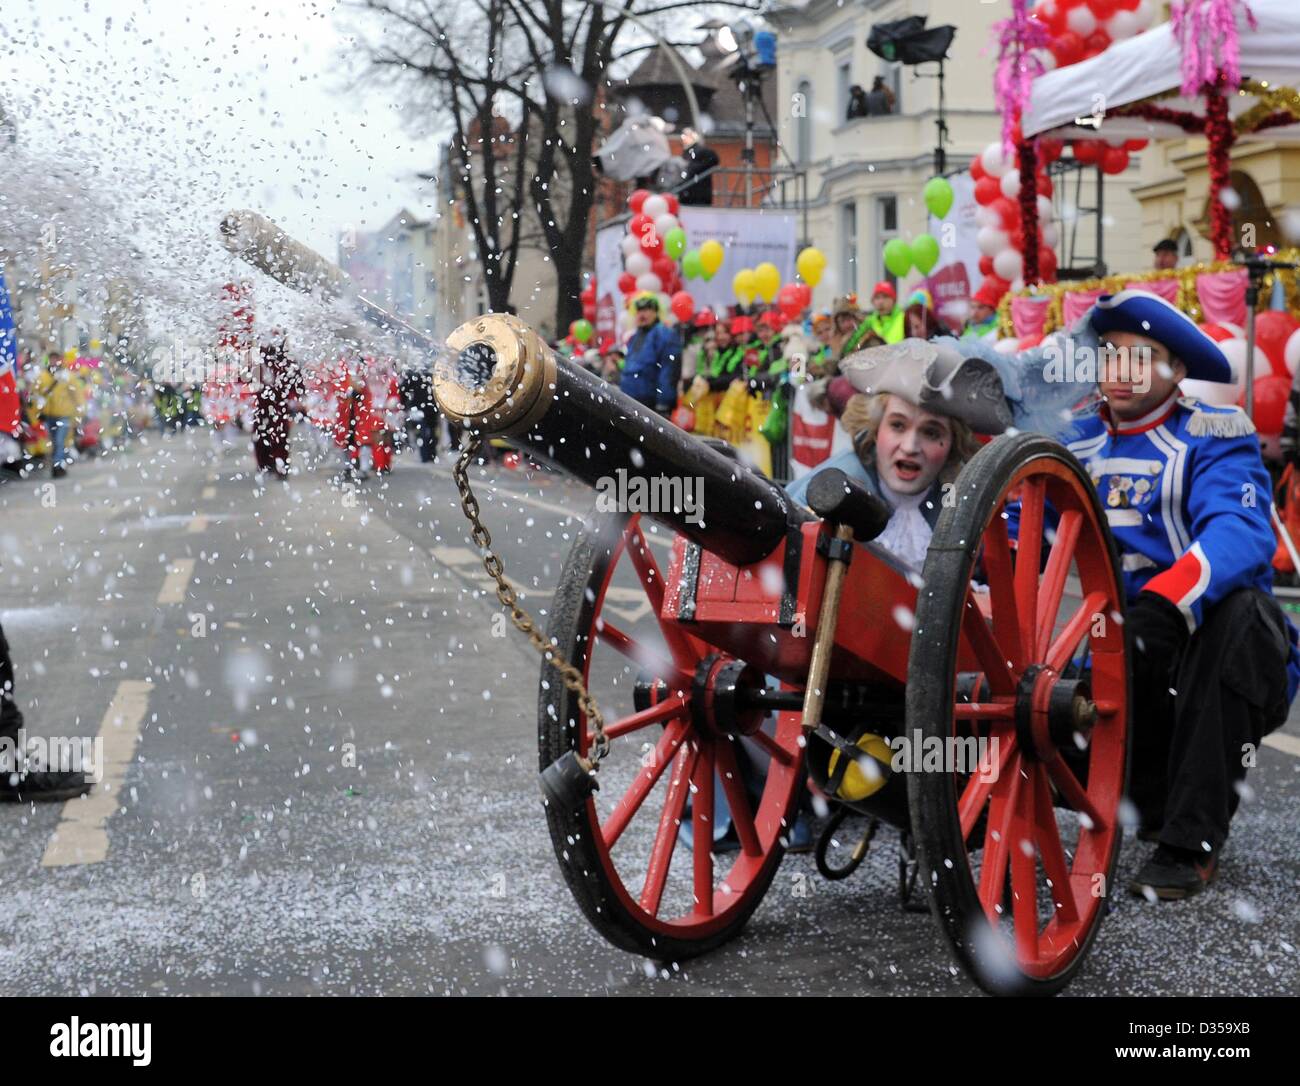 Un Cannone spara coriandoli alla sfilata di carnevale a Cottbus, Germania,  10 febbraio 2013. Foto: BERND SETTNIK Foto stock - Alamy